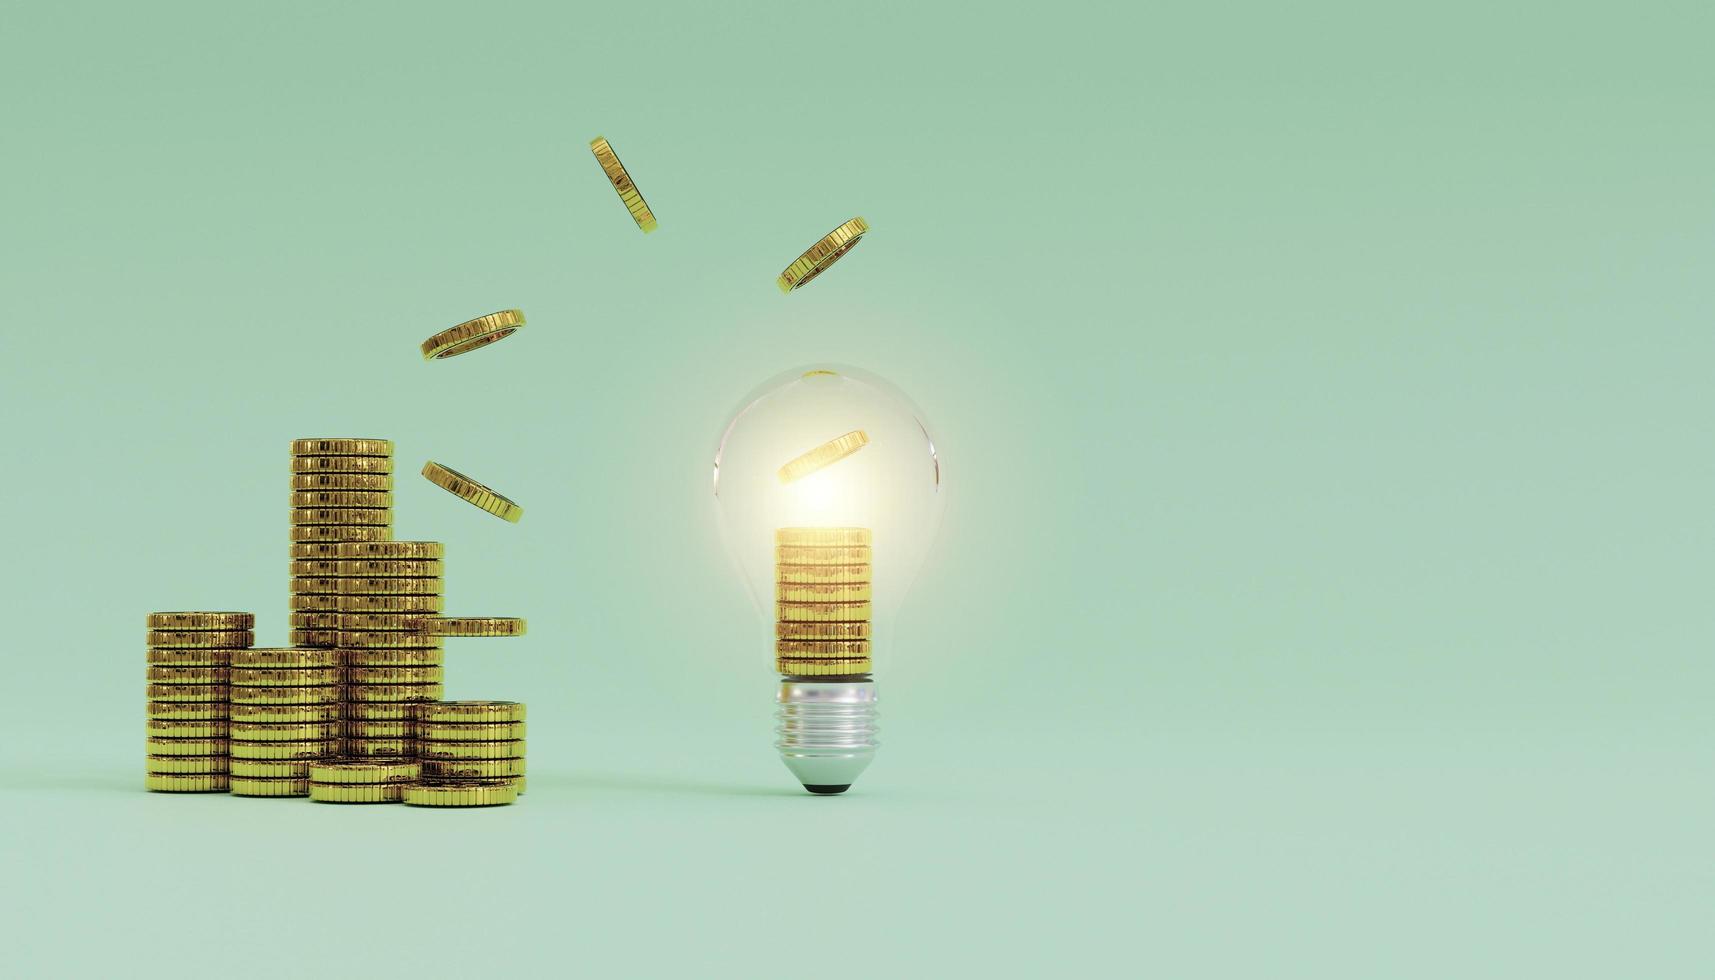 pengamynt som flyger från glödande glödlampa och gör en hög med mynt på blå bakgrund för kreativt tänkande idé och problemlösning kan tjäna mer pengar genom 3d-renderingsteknik. foto